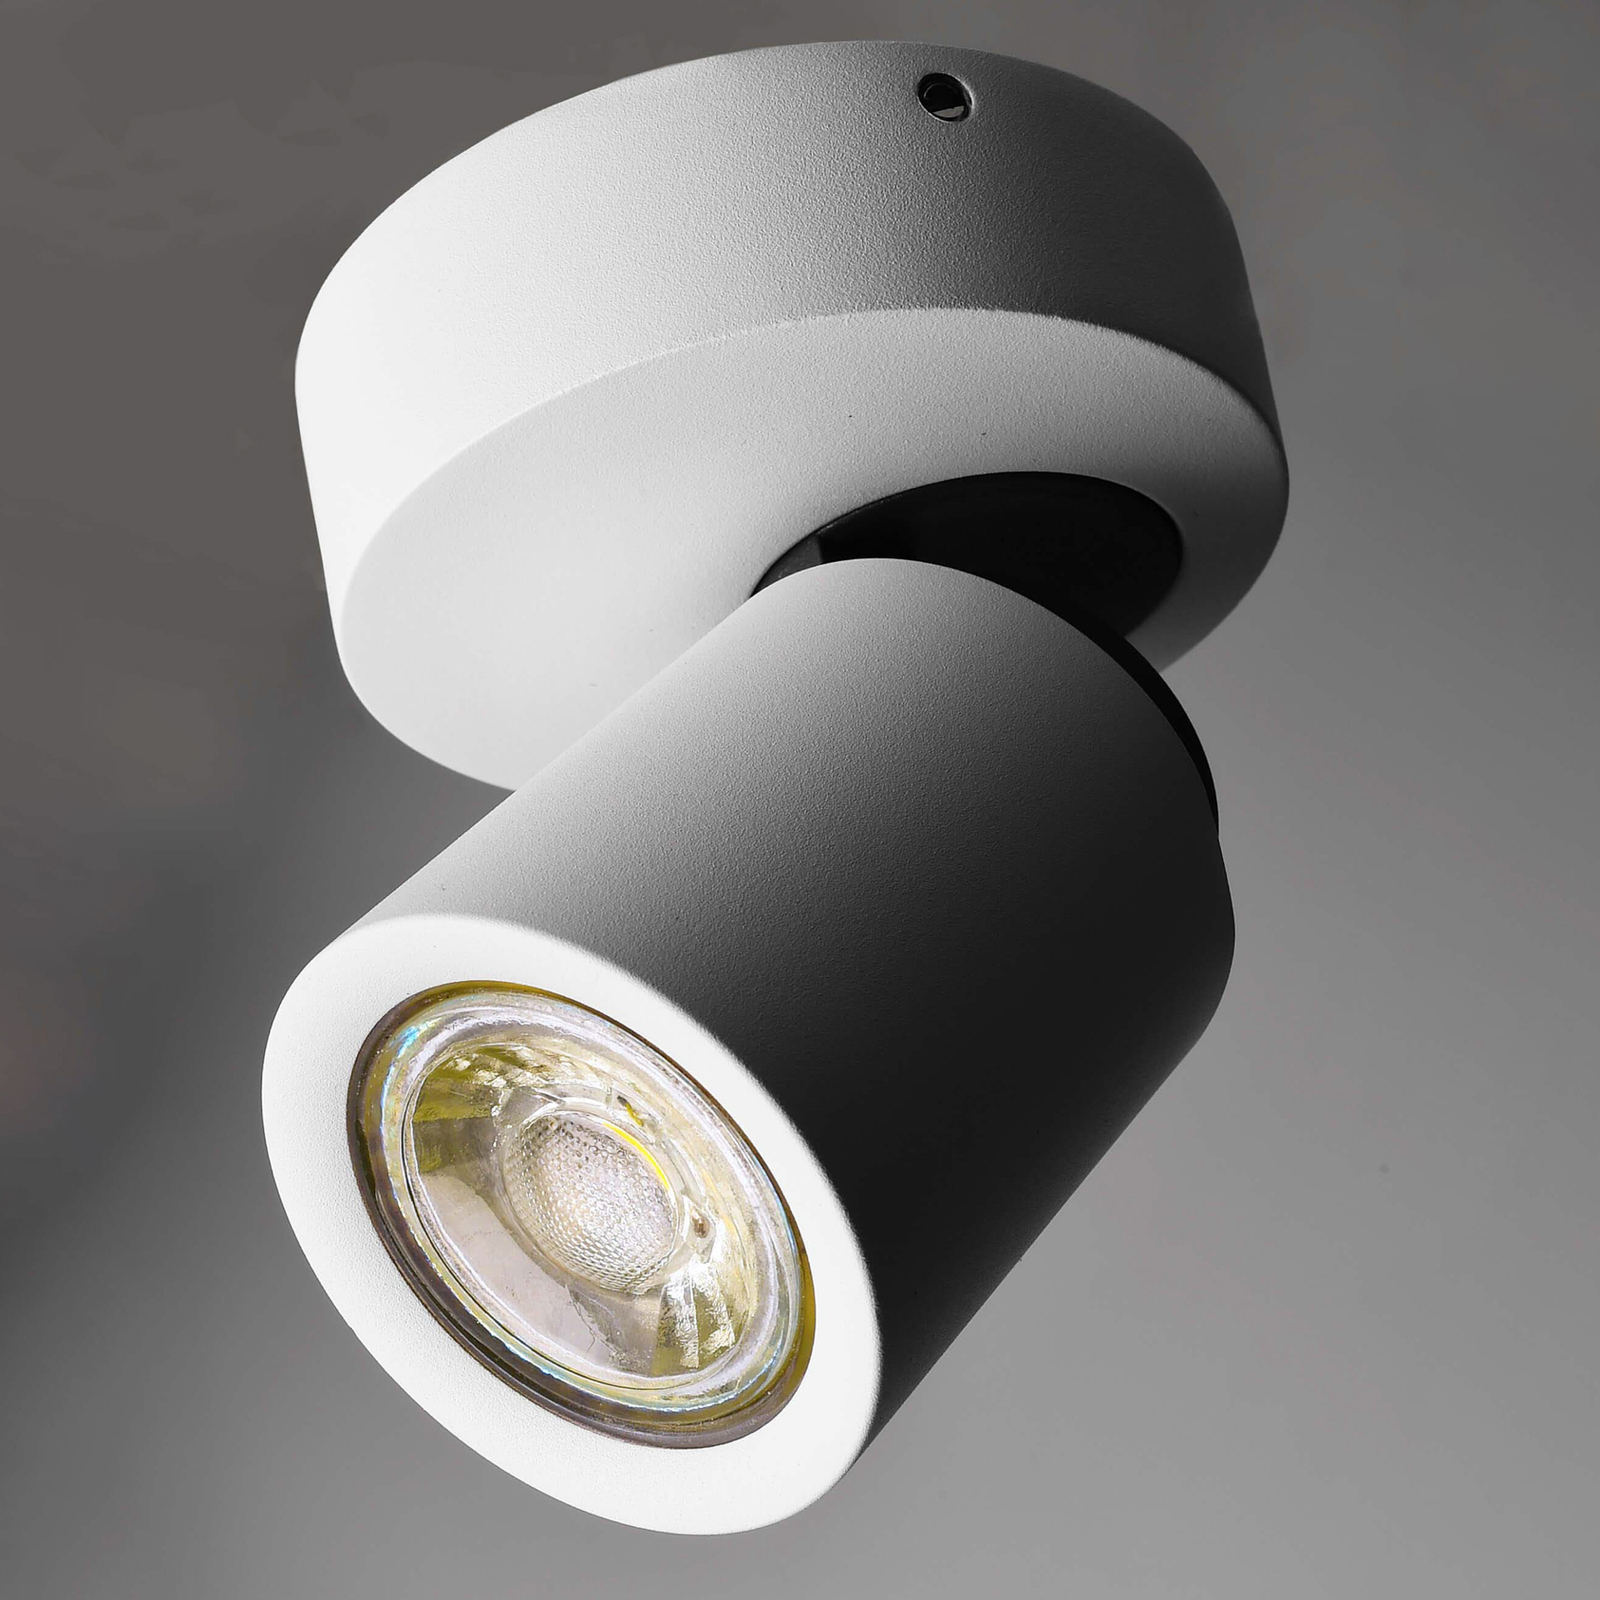 Stropno reflektorsko svetilo Librae Round I za površinsko montažo,